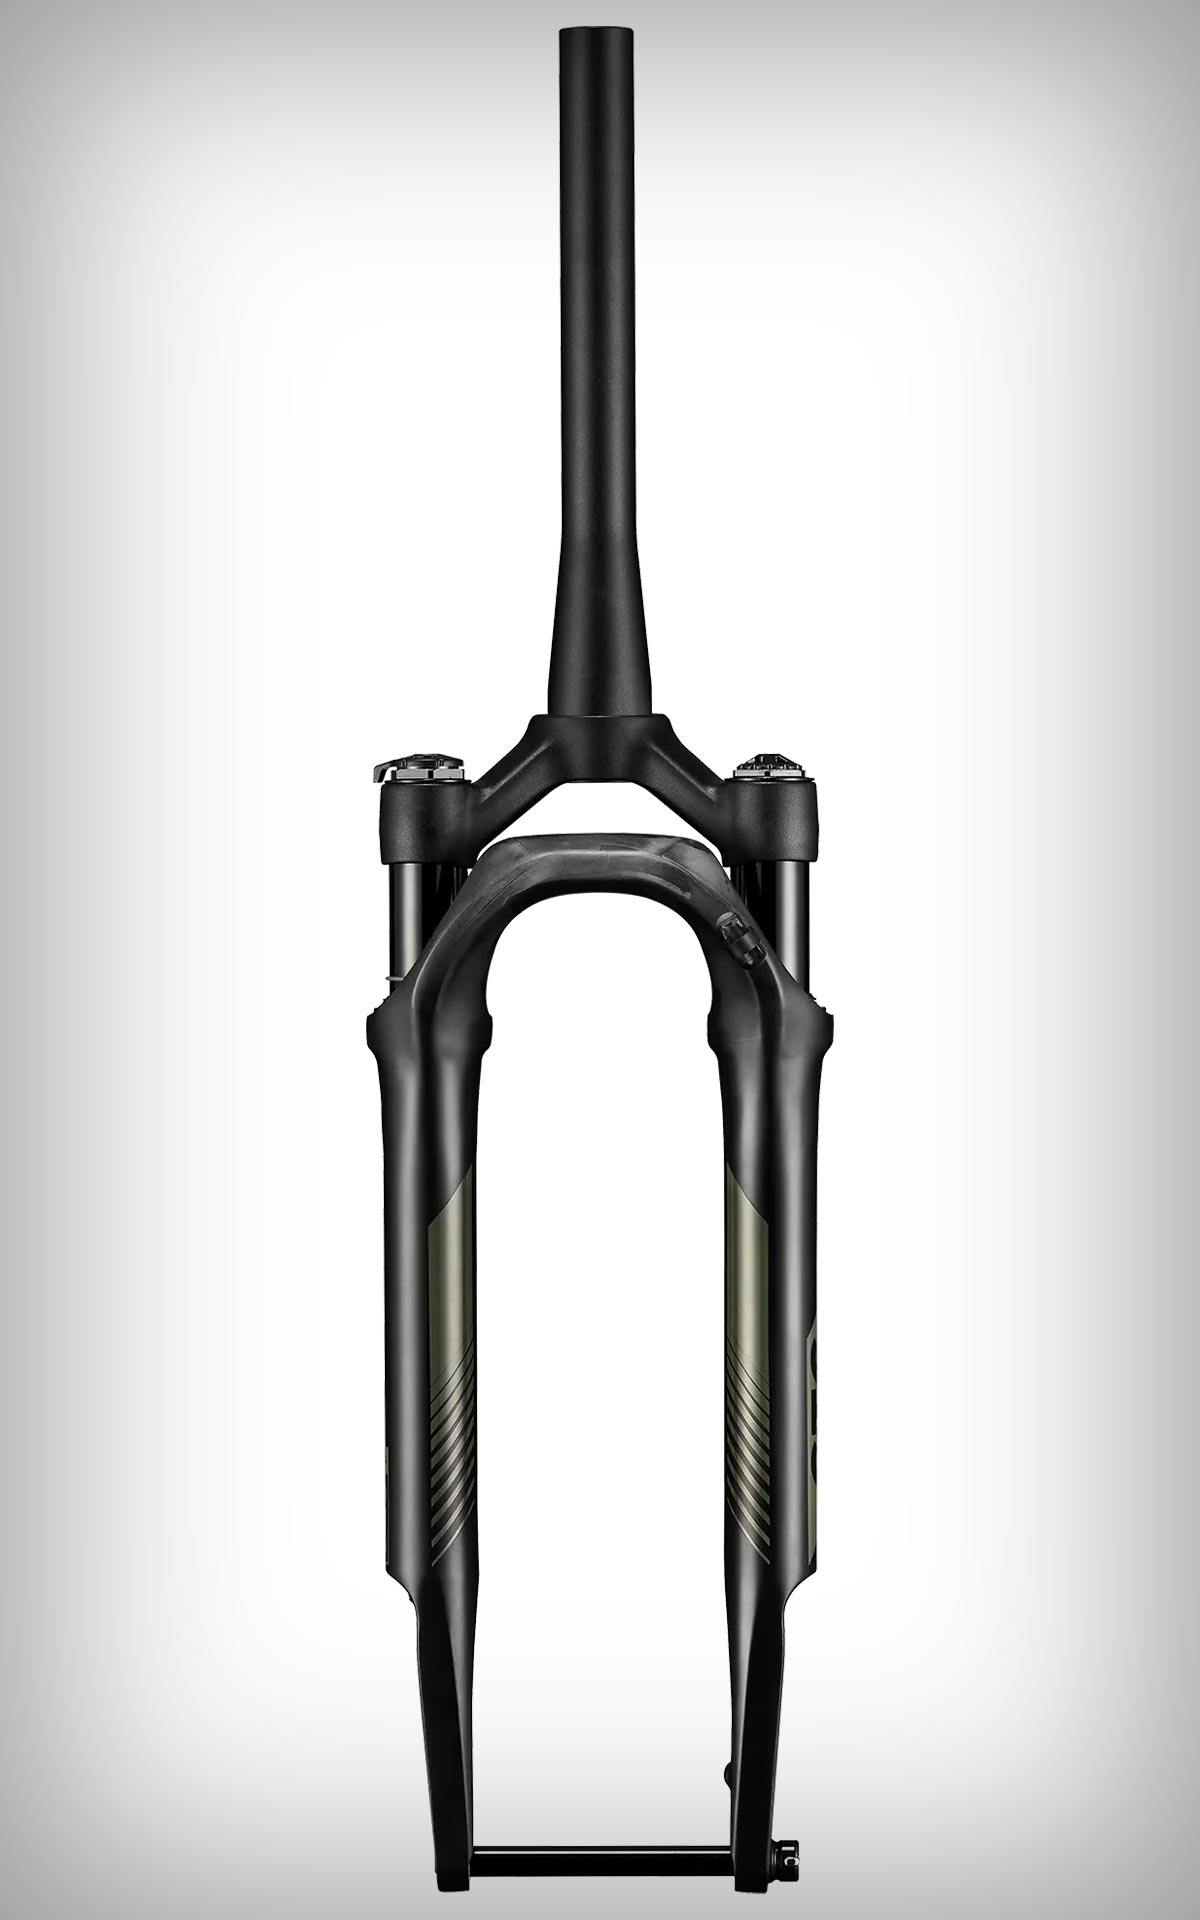 KS presenta la GTC, una horquilla de suspensión para bicis de gravel que promete llevar el rendimiento a otro nivel